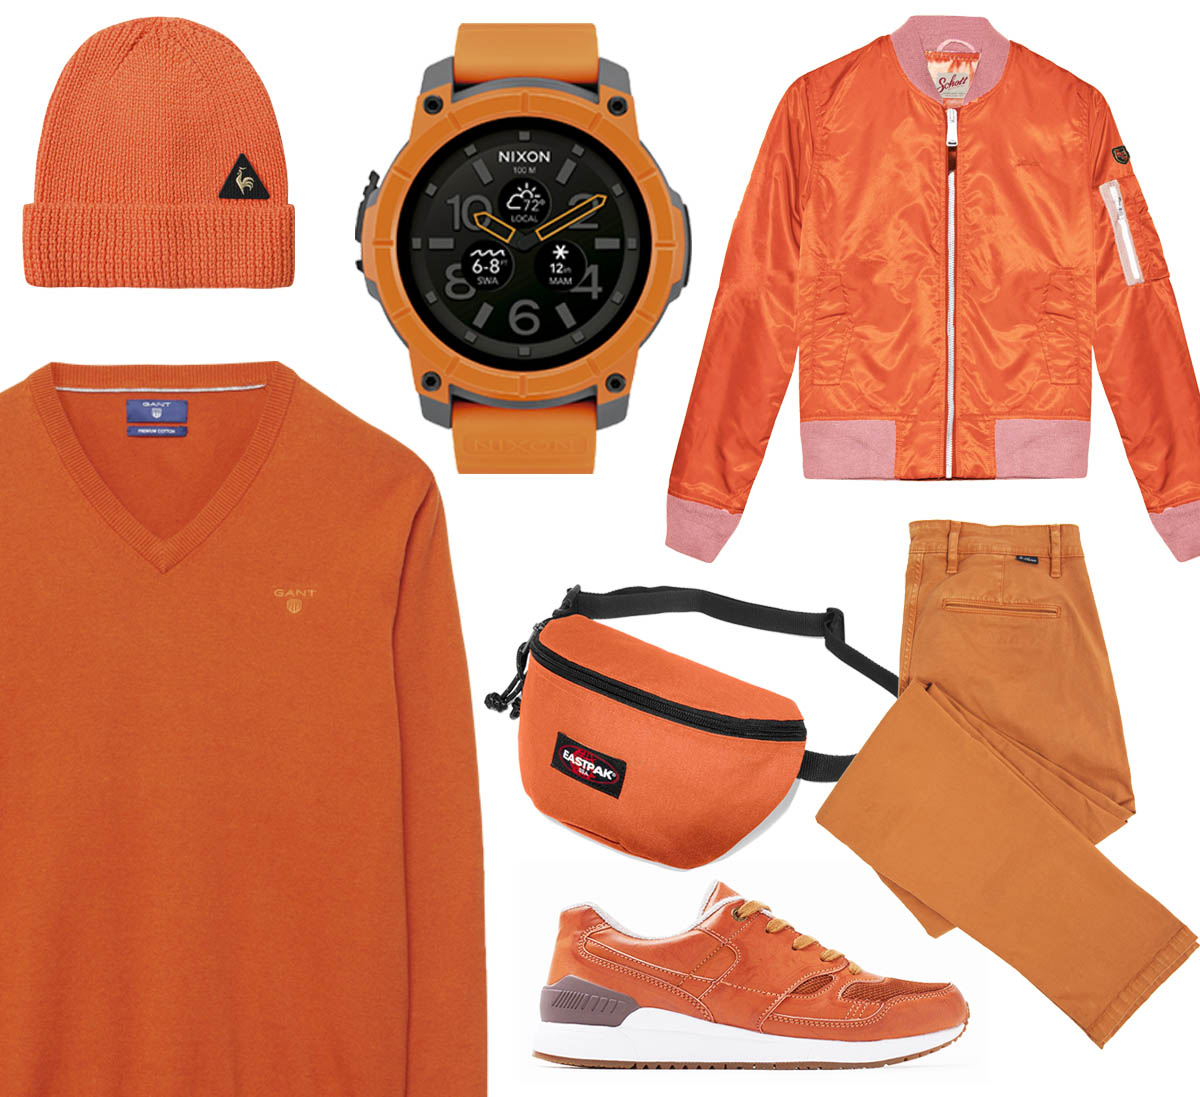 tetu-mode-orange-coq-sportif-schott-esprit-eastpak-nixon